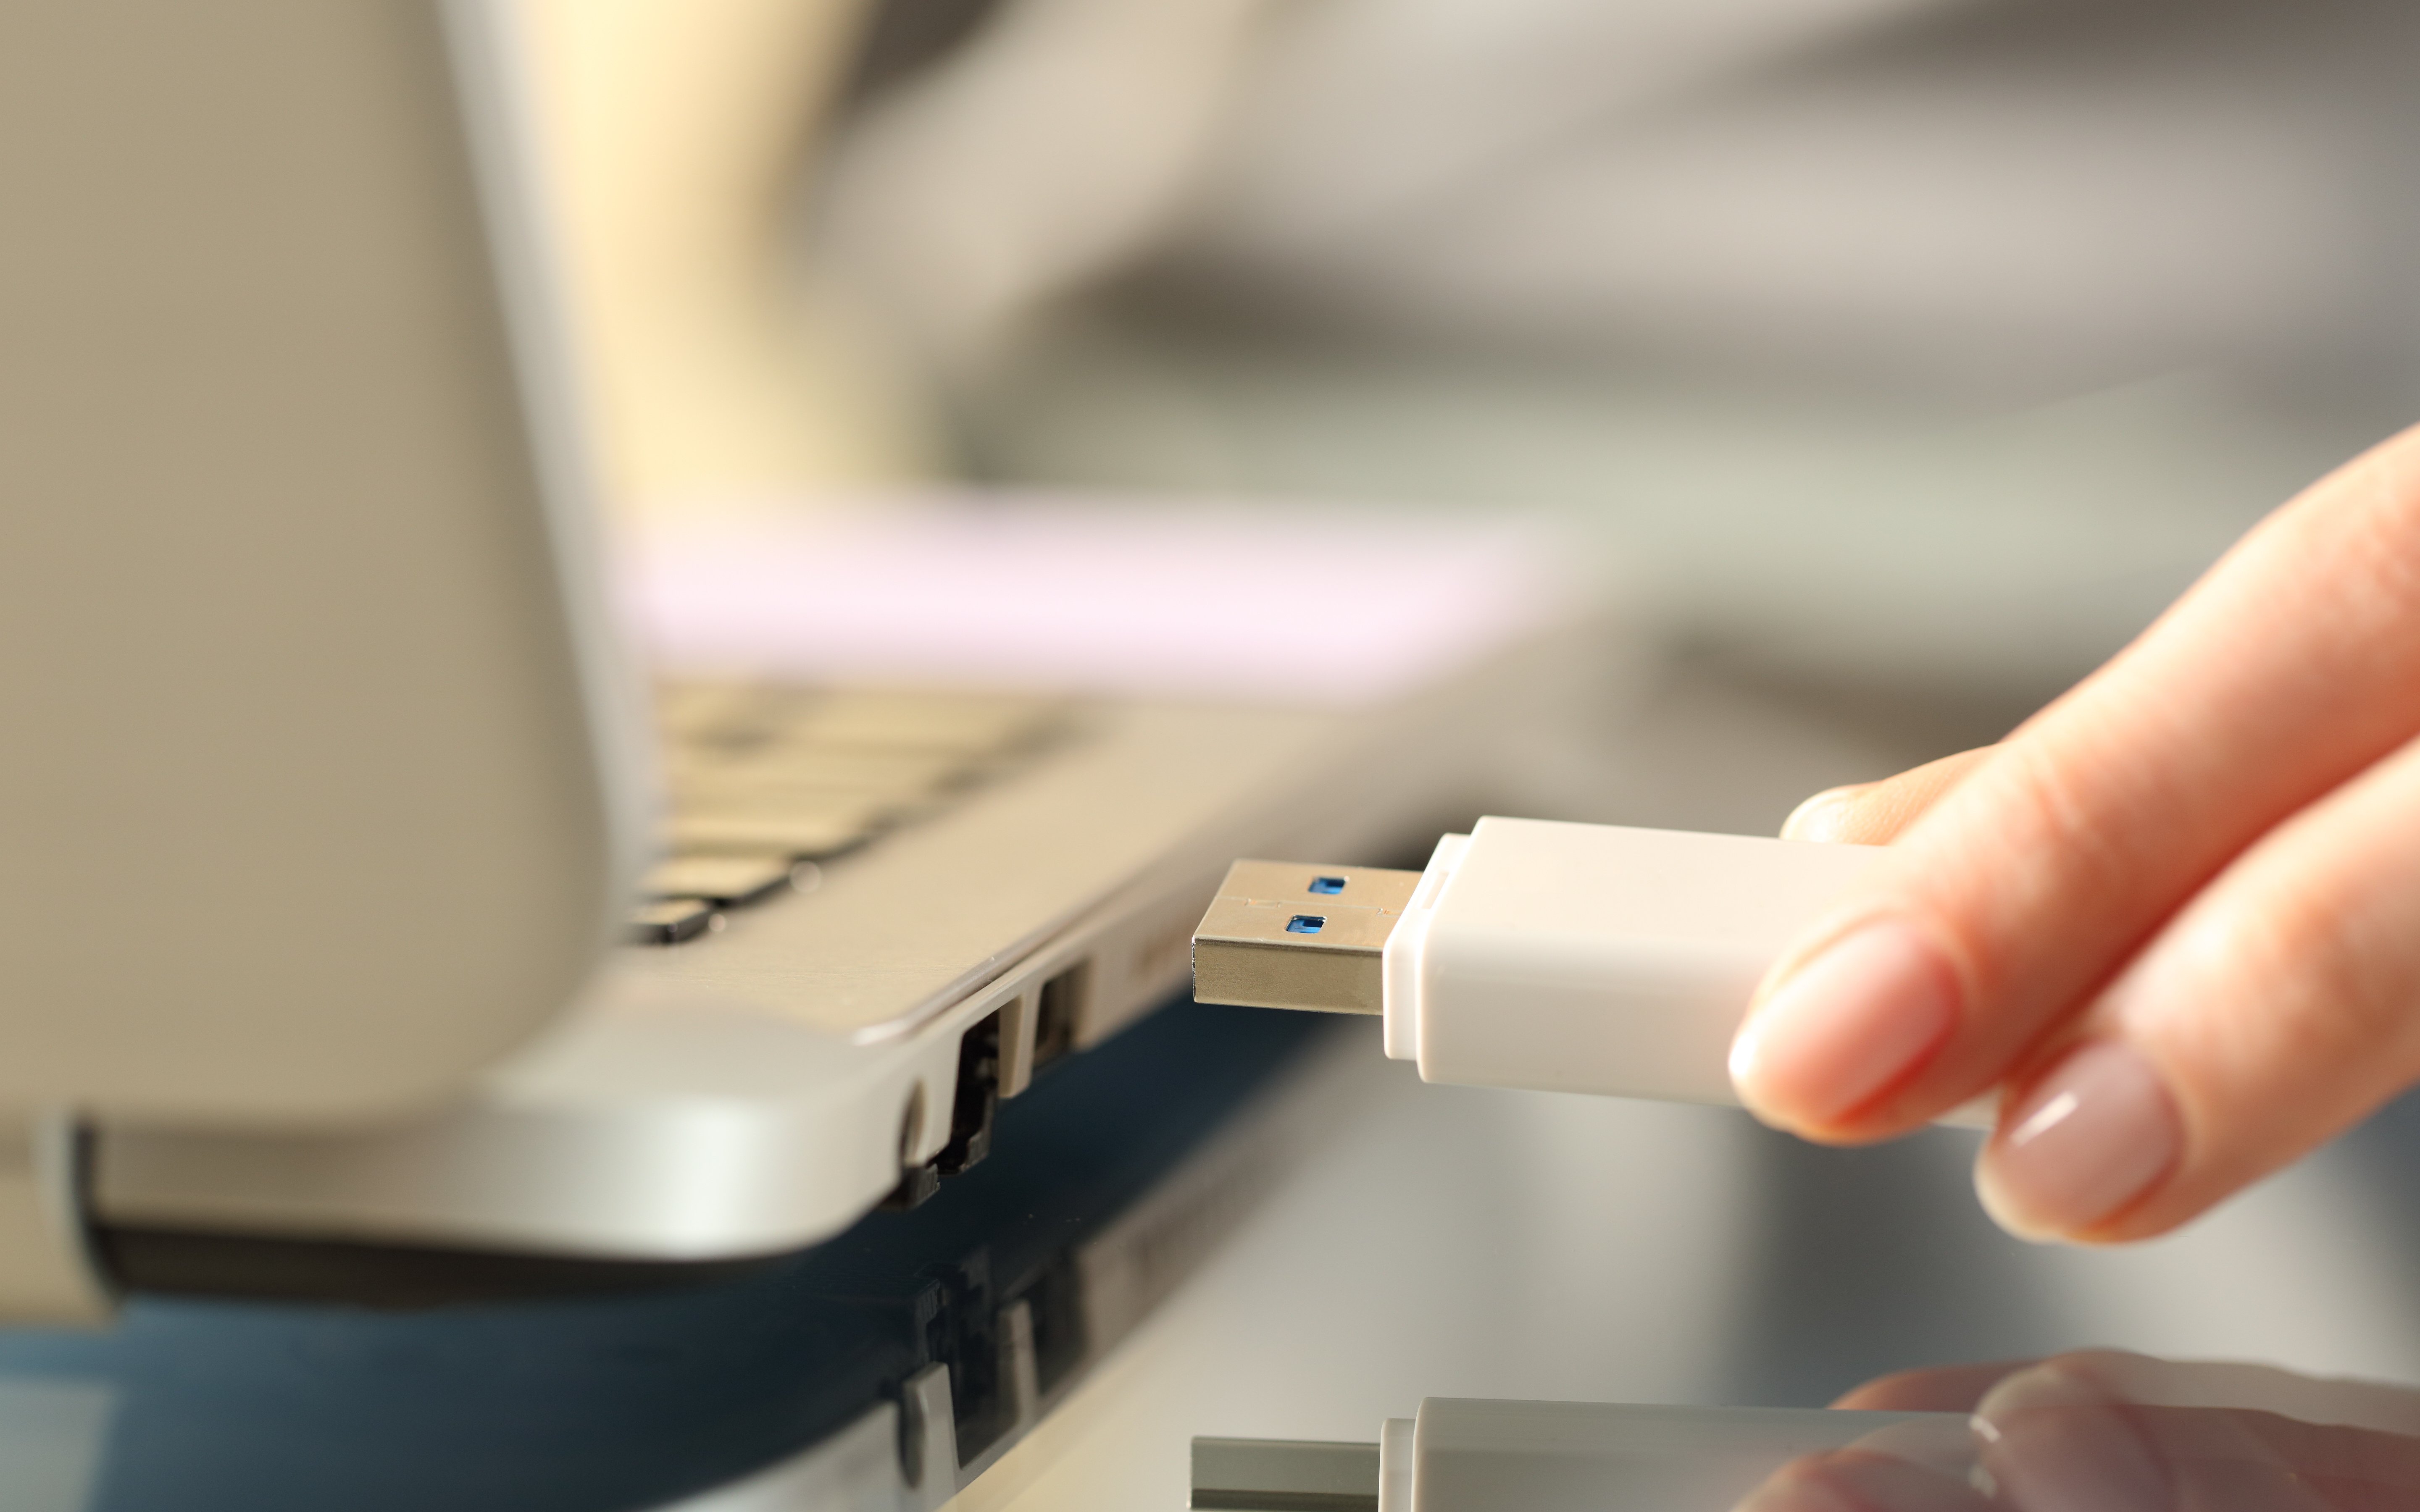 Überprüfen Sie den USB-Stick an verschiedenen Geräten, um sicherzustellen, dass das Problem nicht am Computer liegt.
Testen Sie den USB-Stick an verschiedenen USB-Ports, um festzustellen, ob das Problem spezifisch für einen bestimmten Port ist.